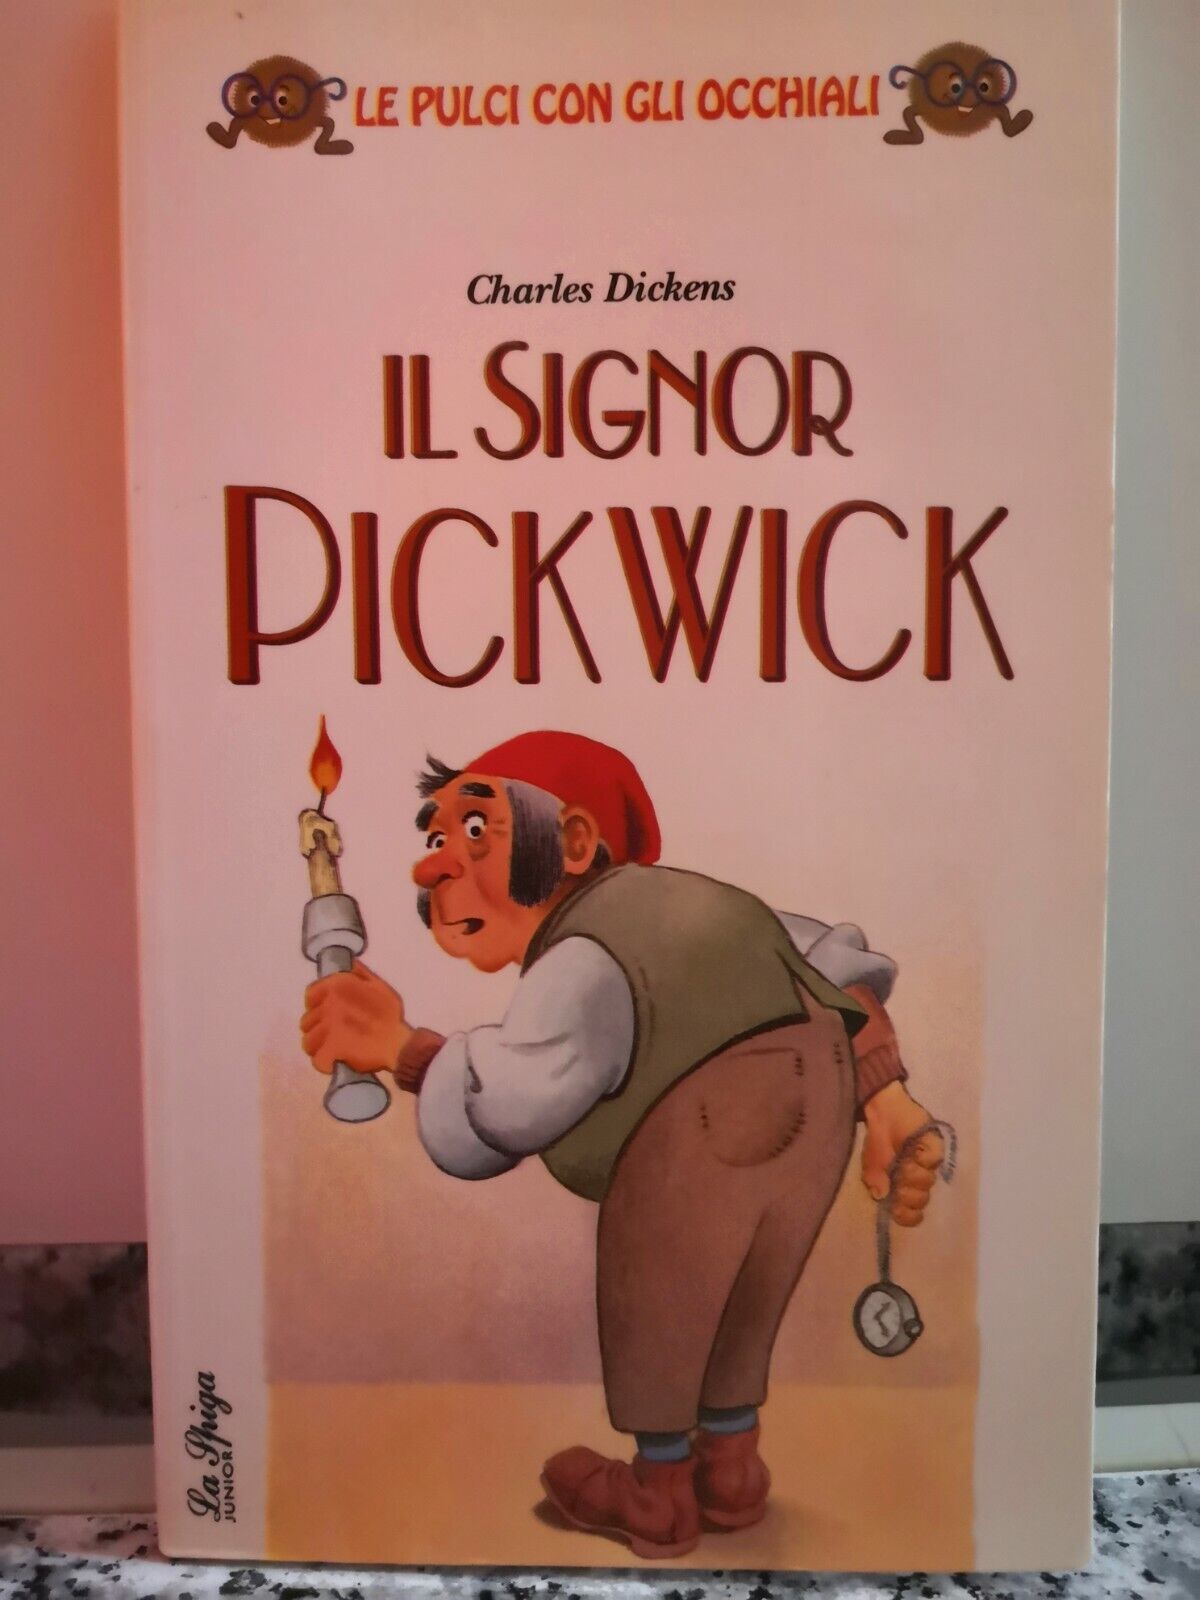  Il signor Pickwick  di Charles Dickens,  1994,  La Spiga-F